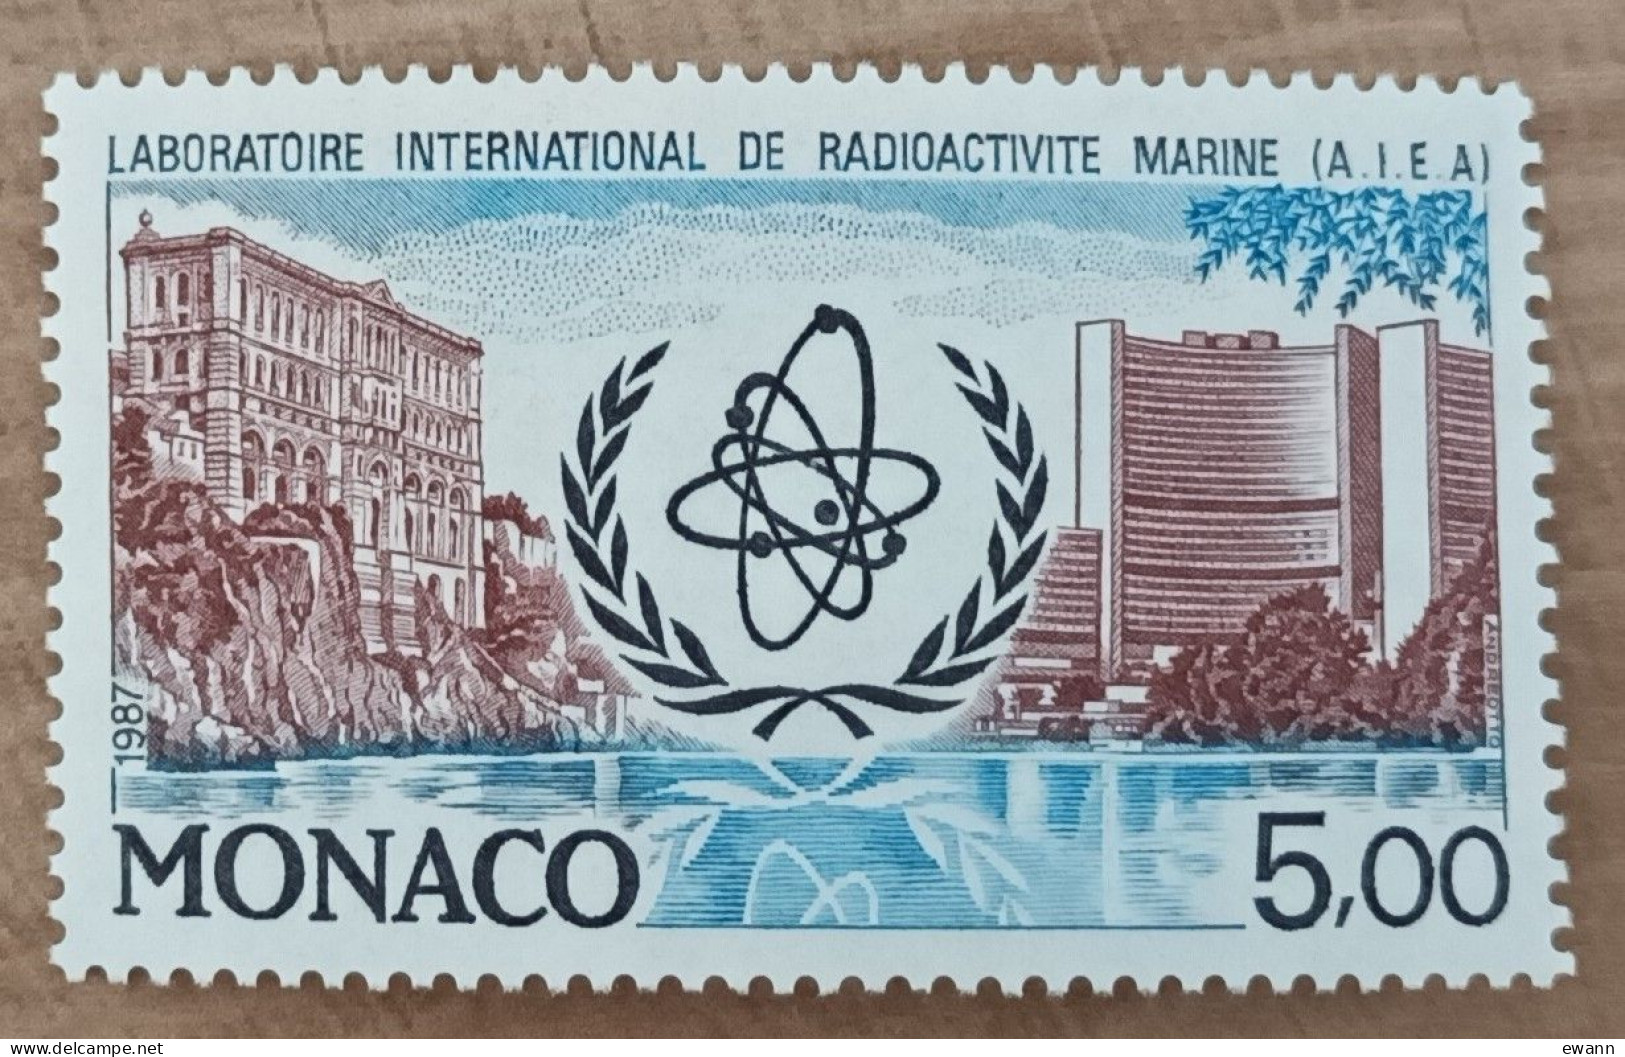 Monaco - YT N°1602 - Laboratoire International De Radioactivité Marine - 1987 - Neuf - Ungebraucht